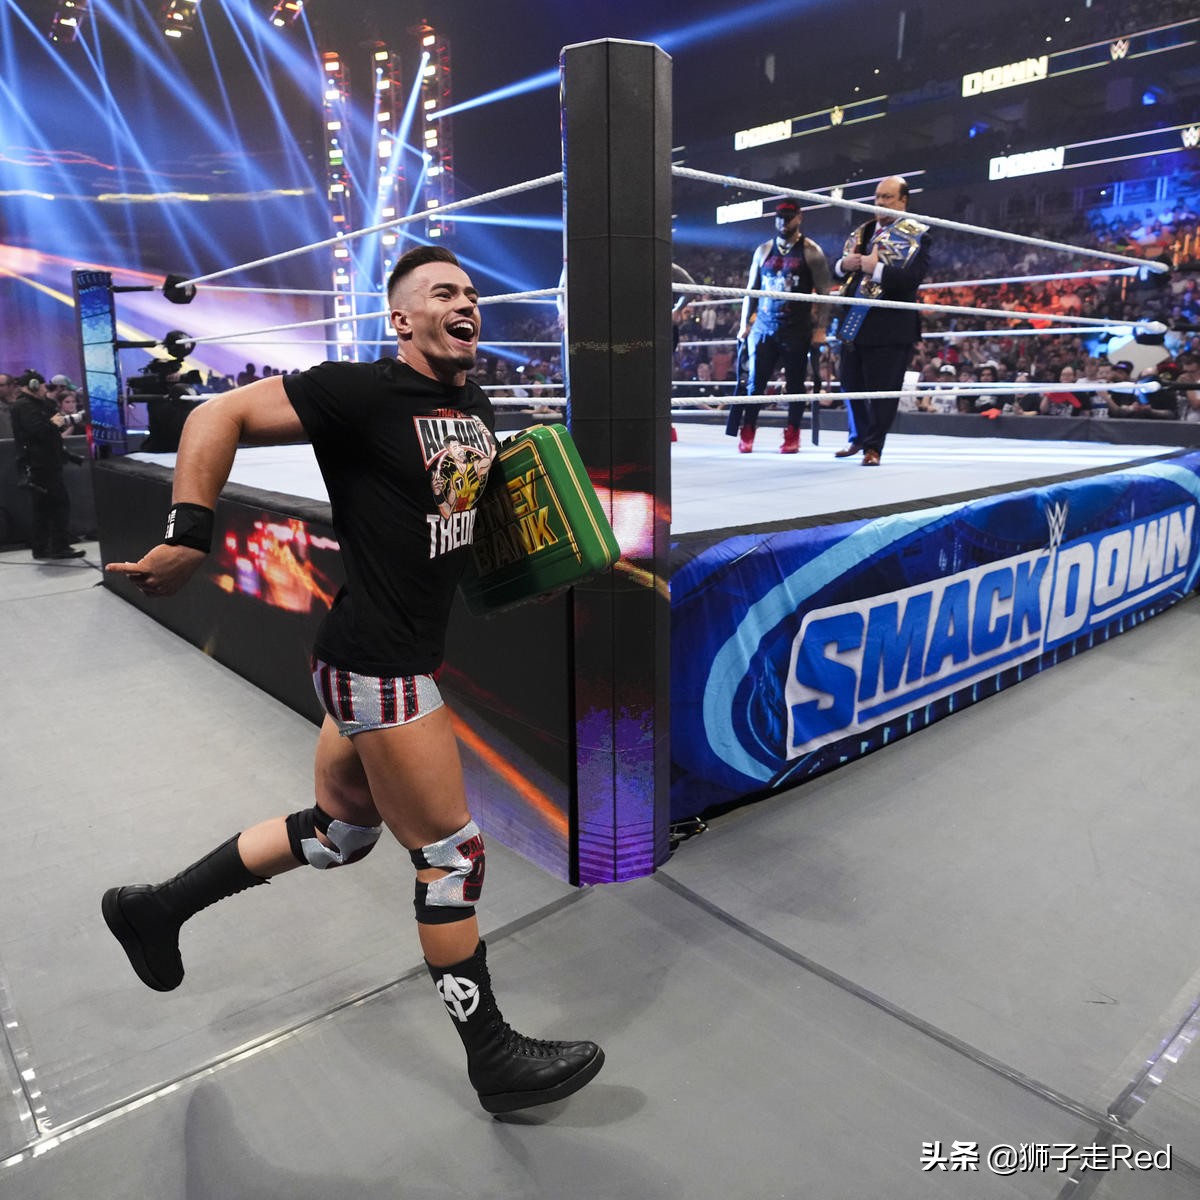 WWE第1194期Smackdown节目2022年7月8日赛况及精选照片集